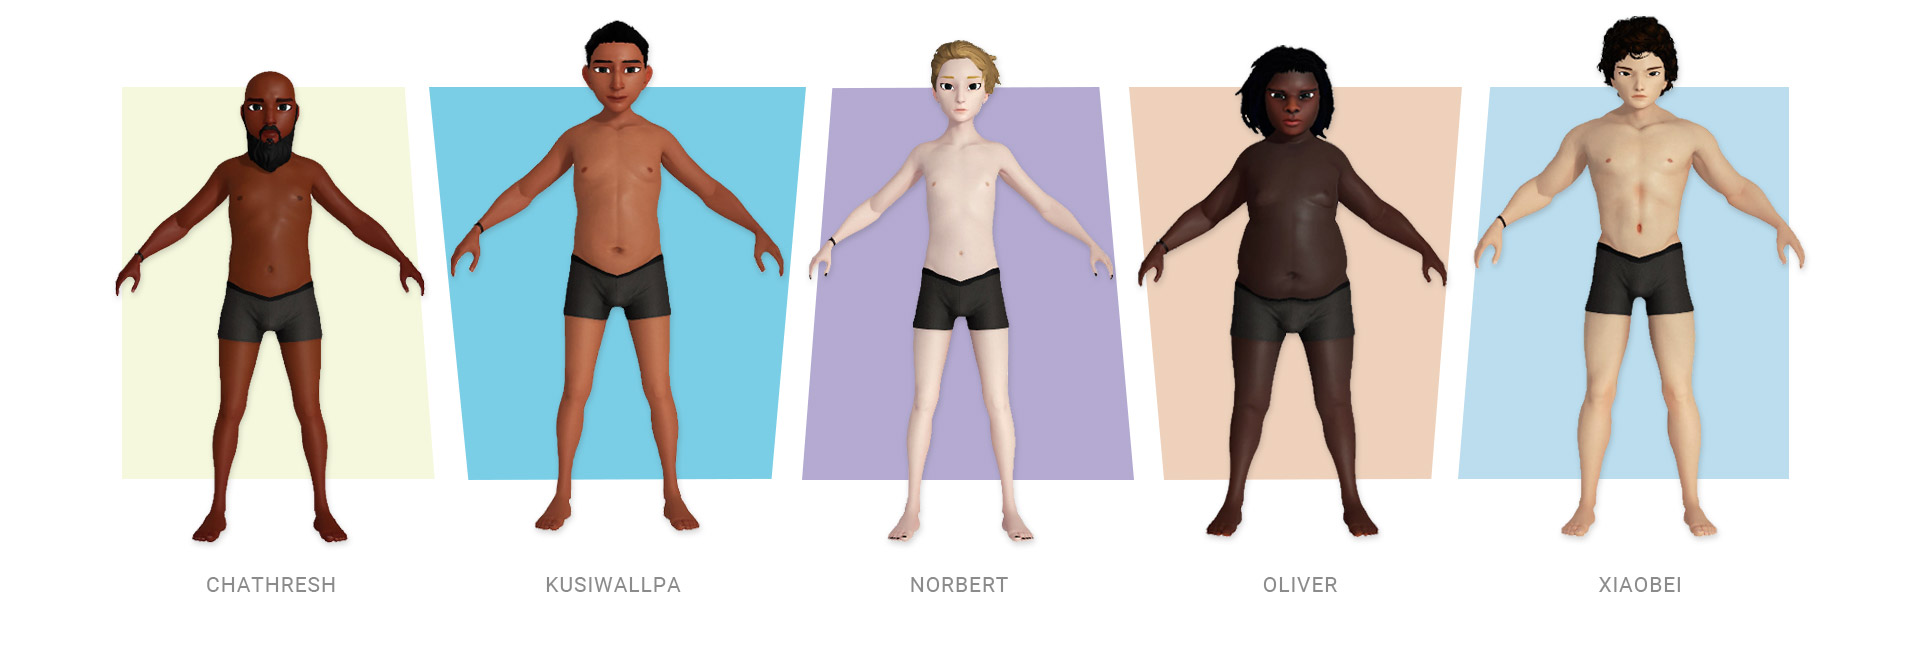 We're Homies-body shapes in underwears